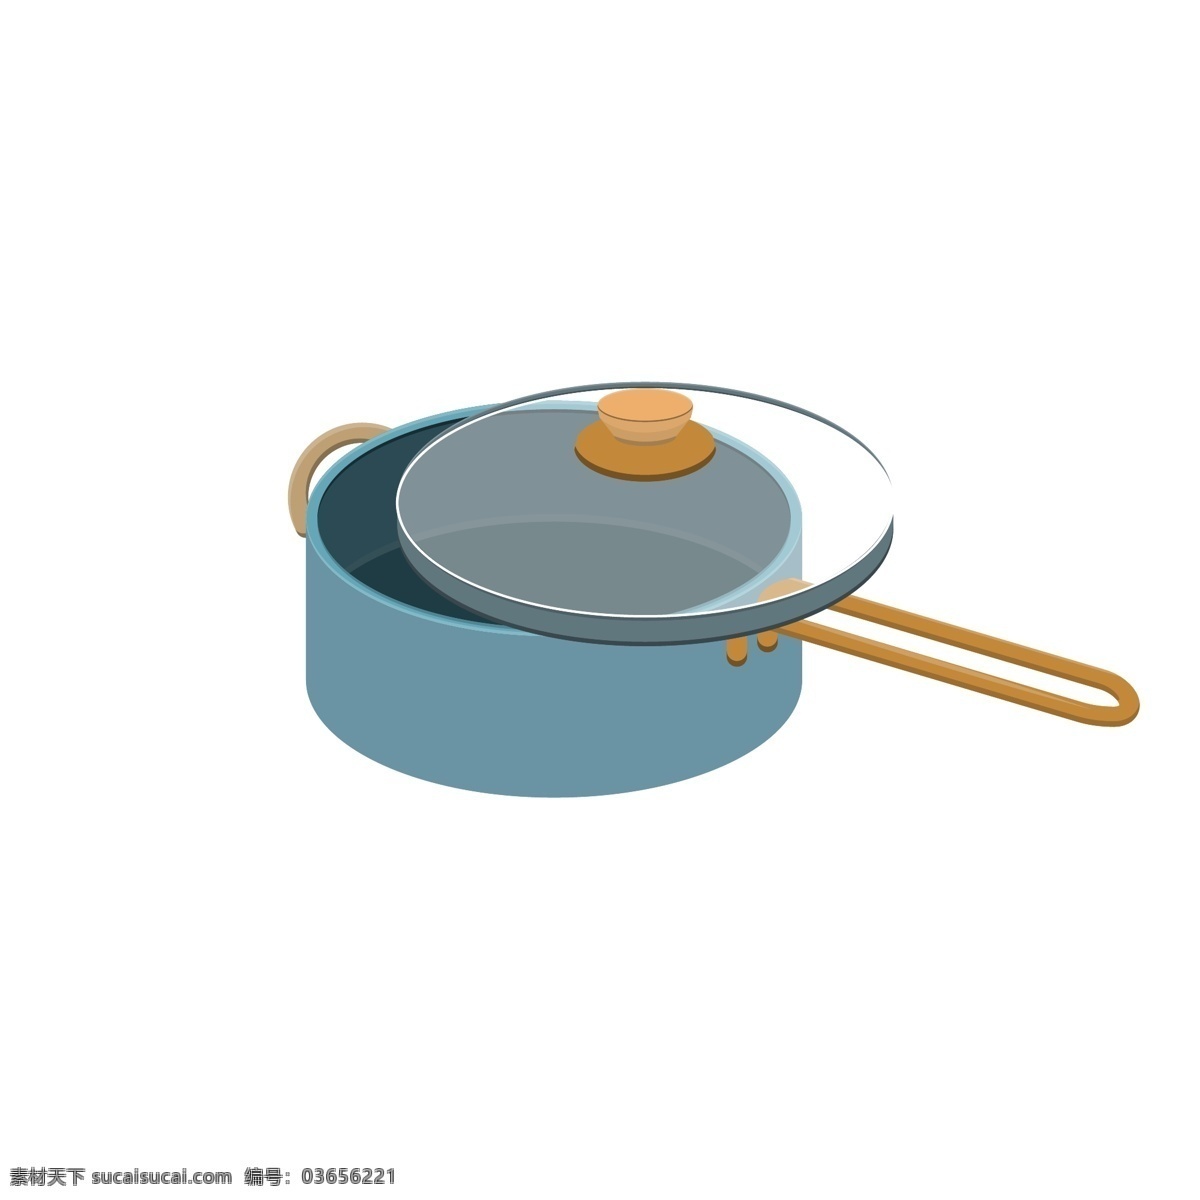 手绘 矢量 扁平 做饭 器具 小 蒸锅 餐具 可爱 小清新 锅 锅盖 厨房用品 透明底免抠